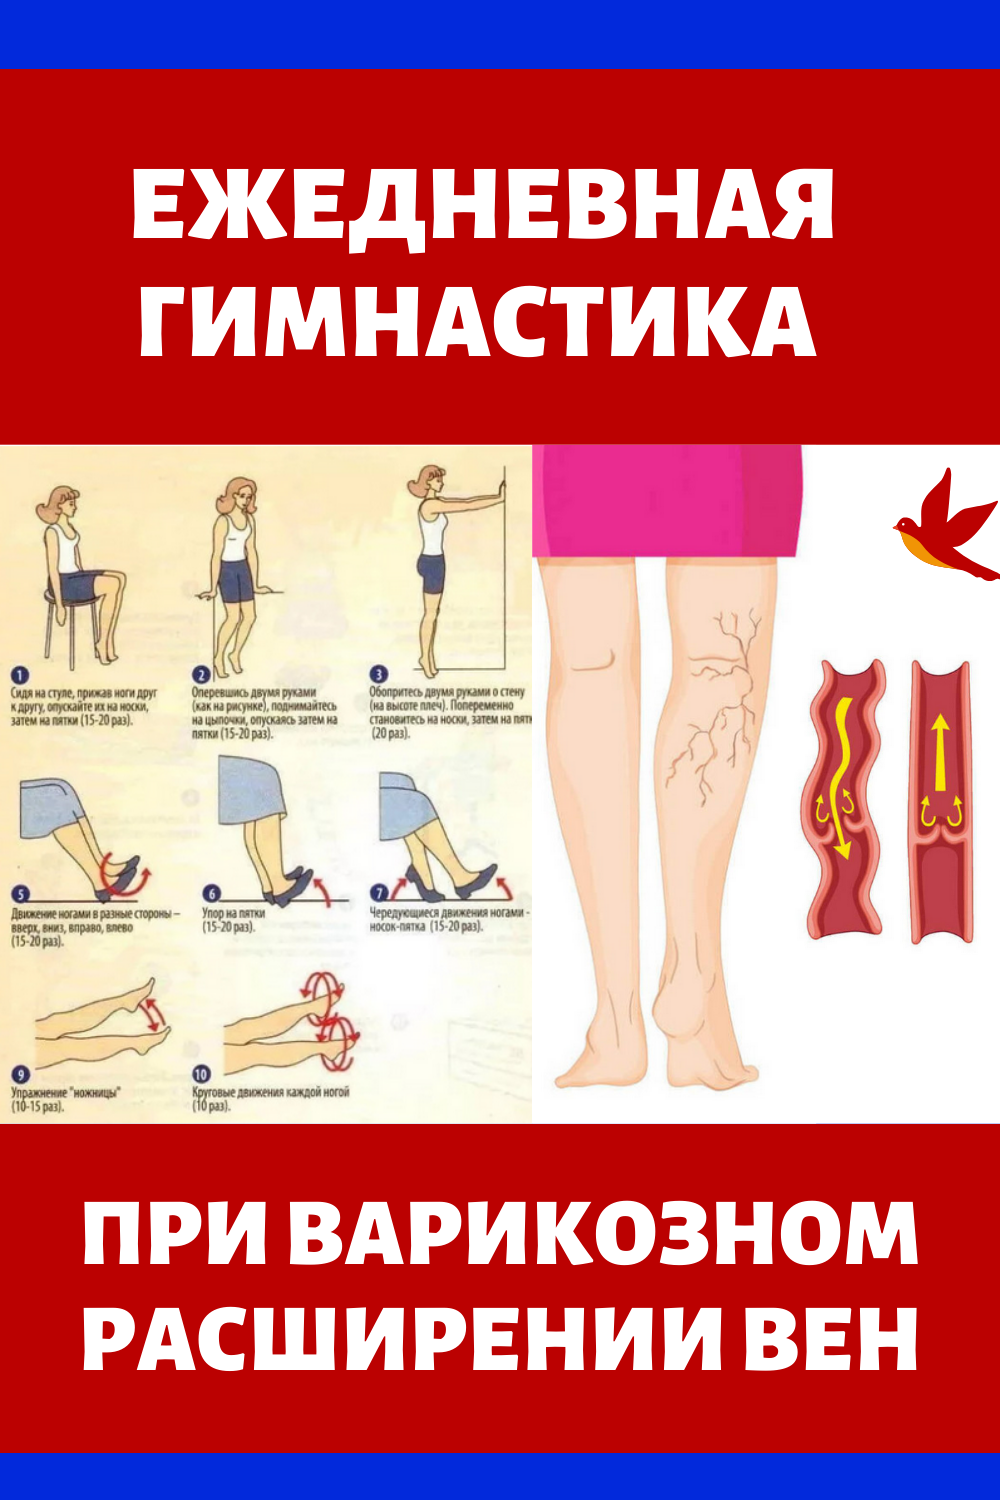 Профилактика варикозного расширения нижних конечностей. Упражнения притварикозе. Упражнения при варикозе. Упражнения для ног при варикозе. Гимнастика при варикозном расширении вен.